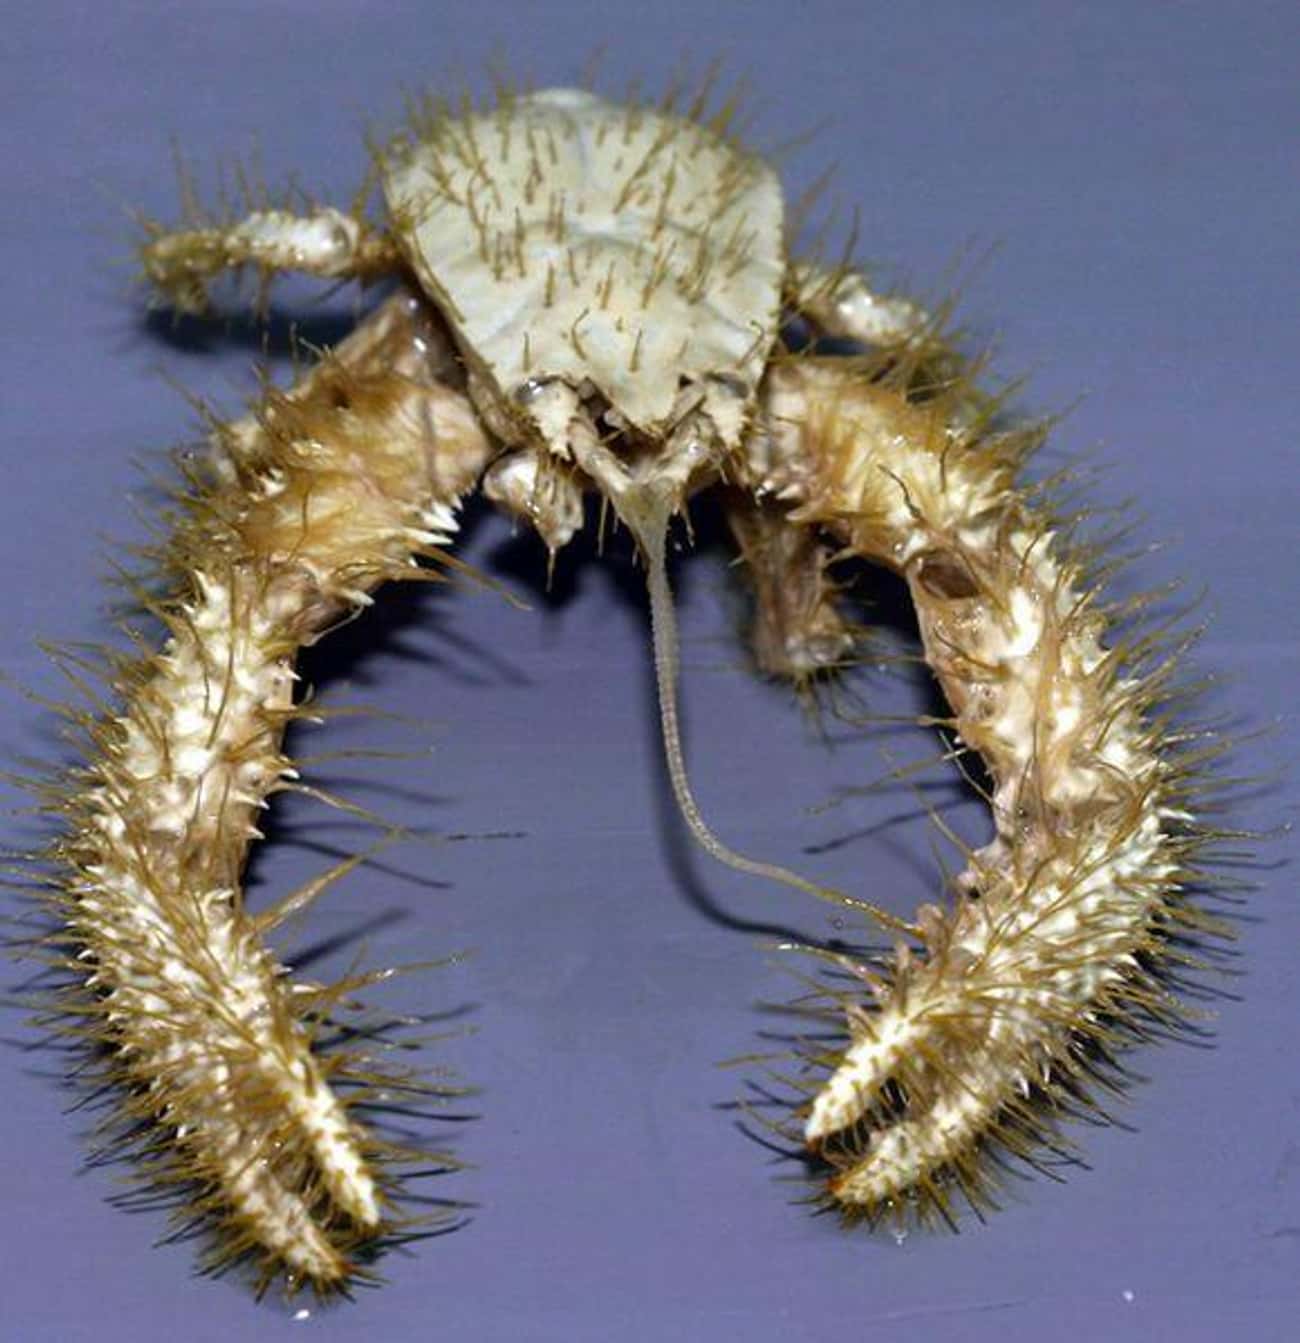 The Kind of Creepy Kiwa Crab